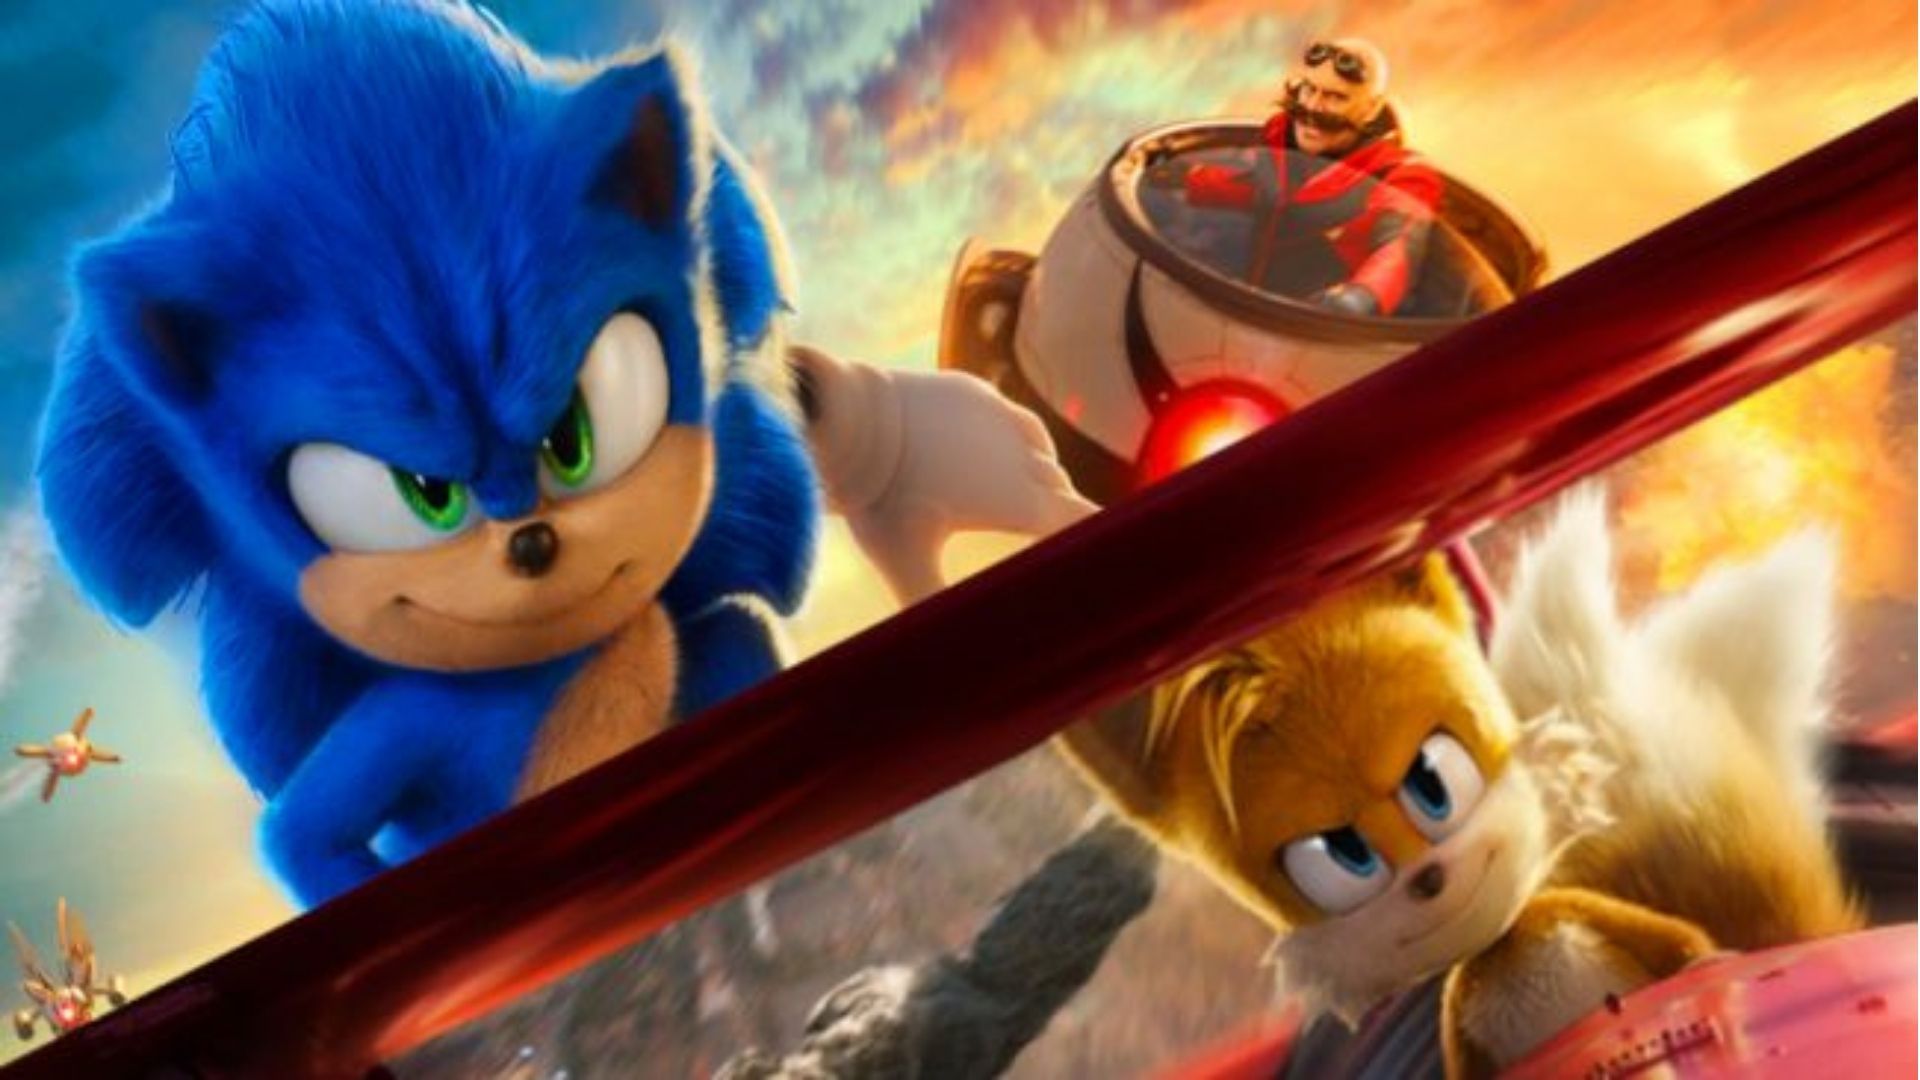 Jogue Heróis do Sonic 2 gratuitamente sem downloads